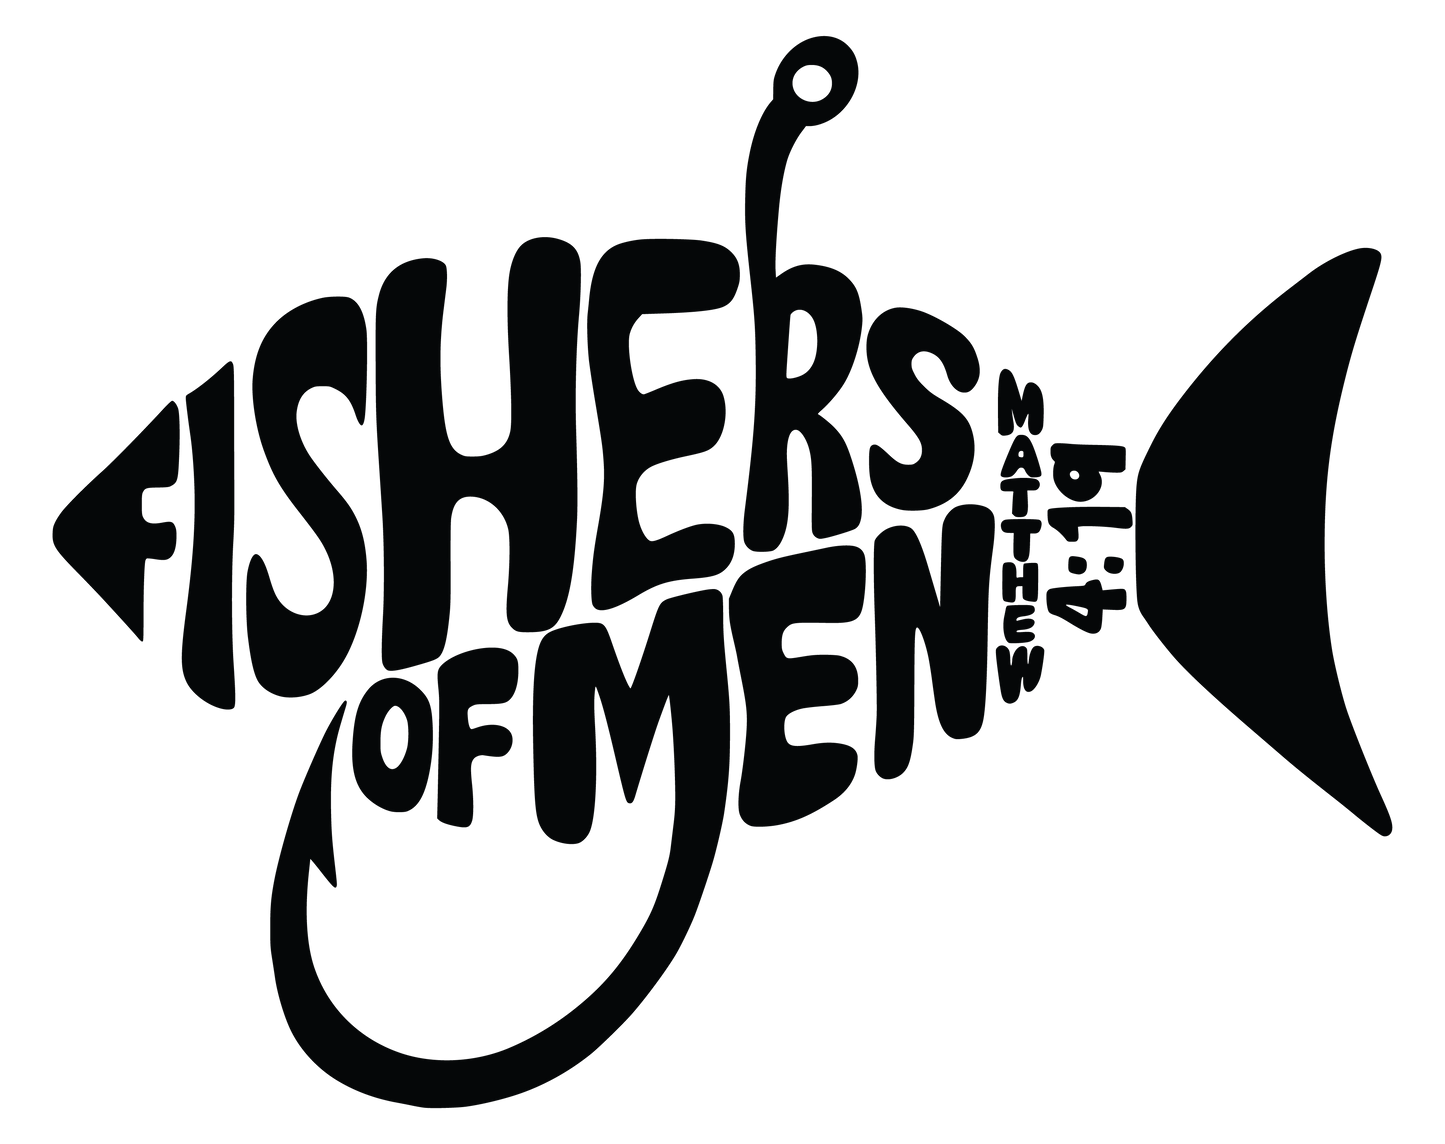 Fisher of Men (Matthew 4:19) Vinyl Graphic for Decals